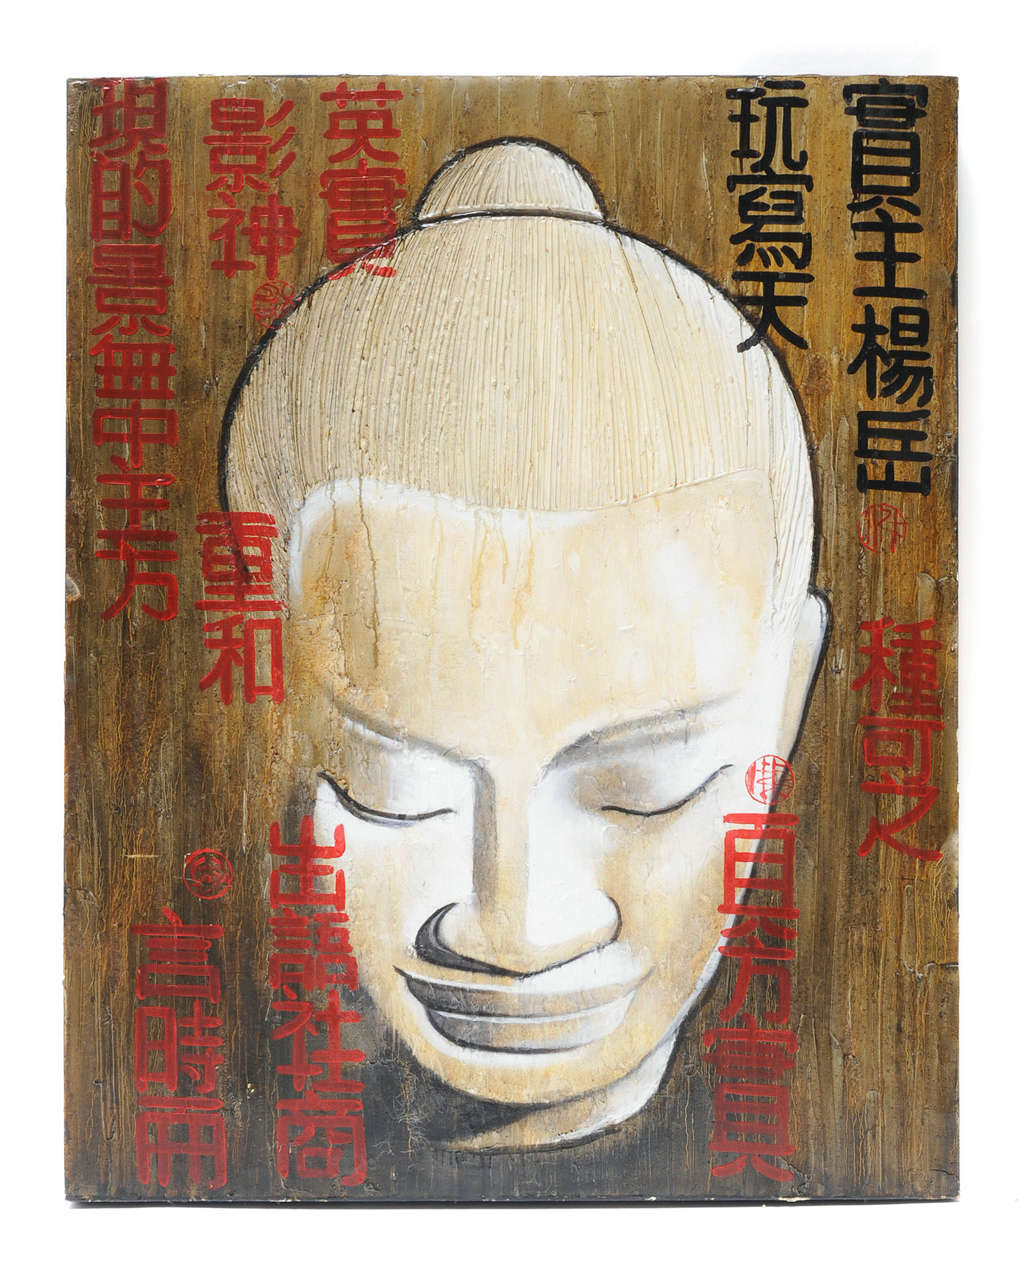 Buddha head, vintage painting from Hong Kong.